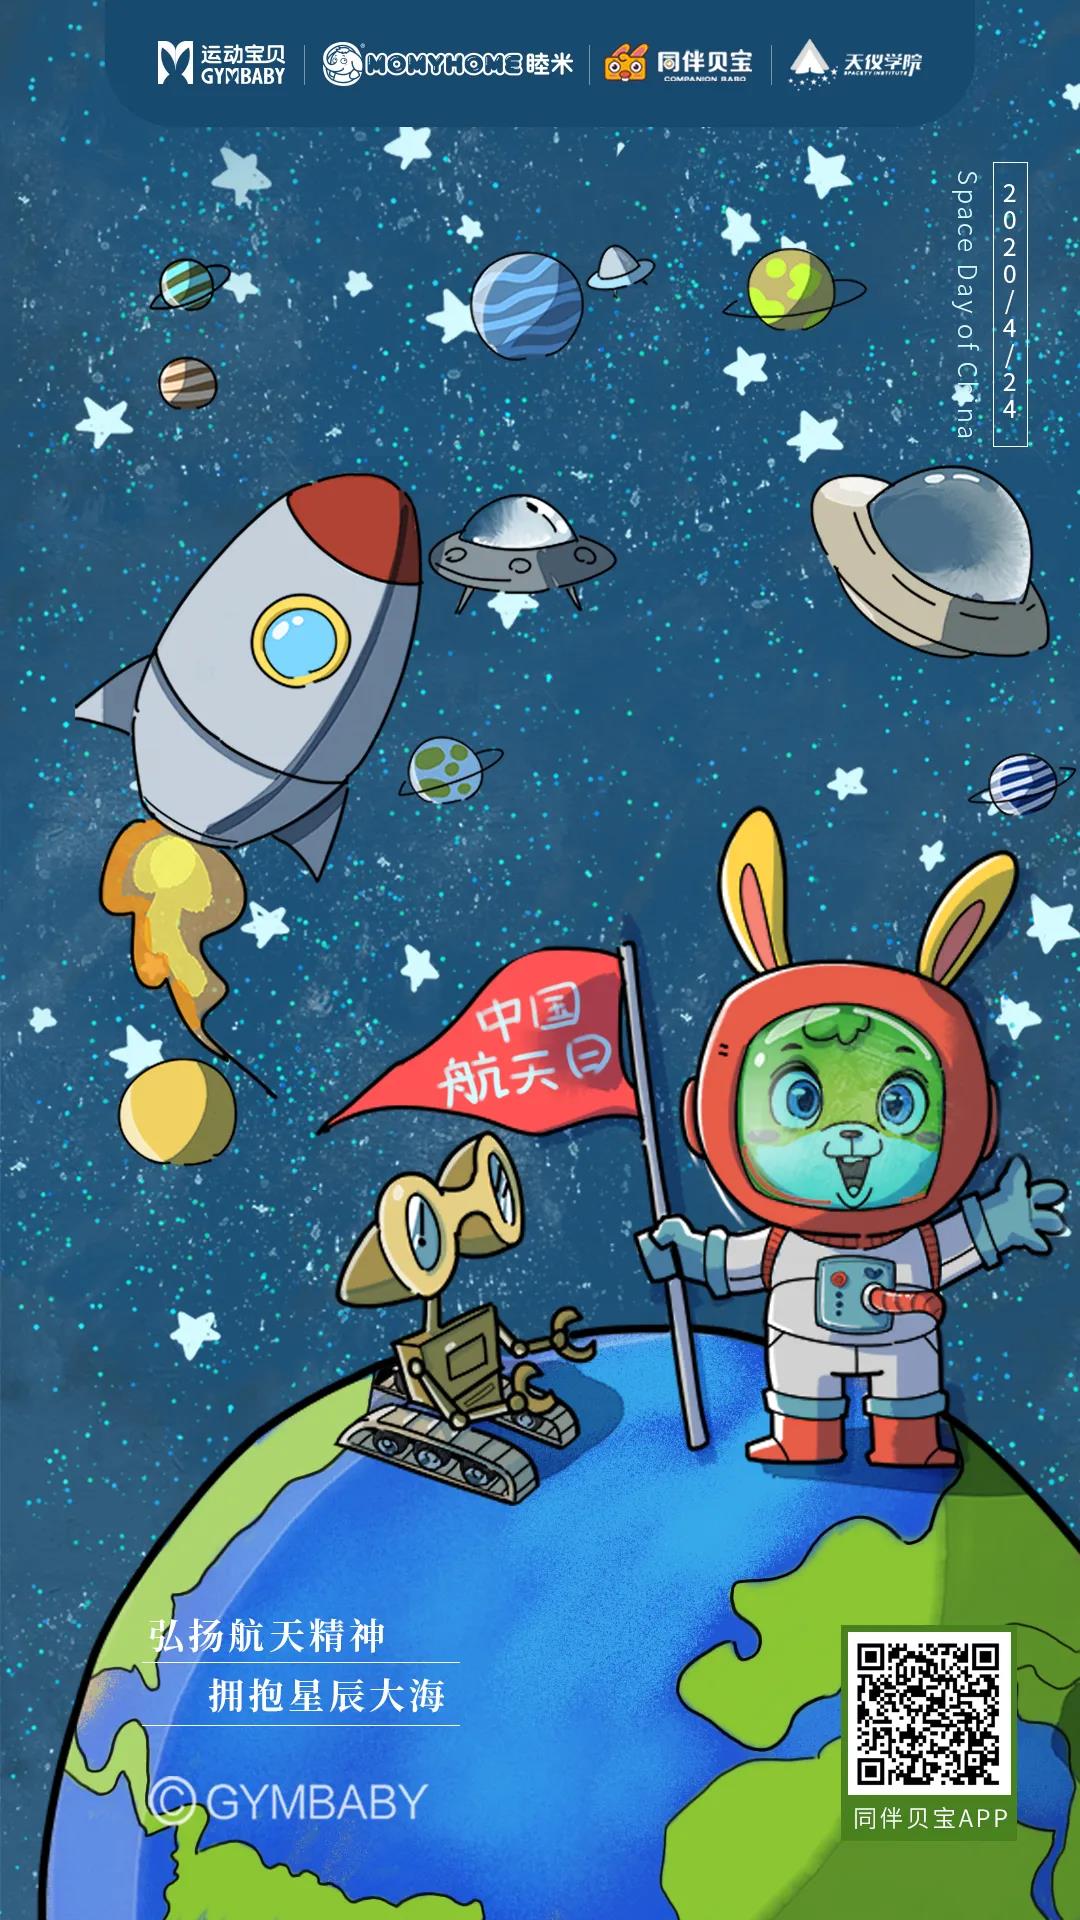 中国航天日 | 运动宝贝集团联合天仪学院共同推出航天科普系列课程